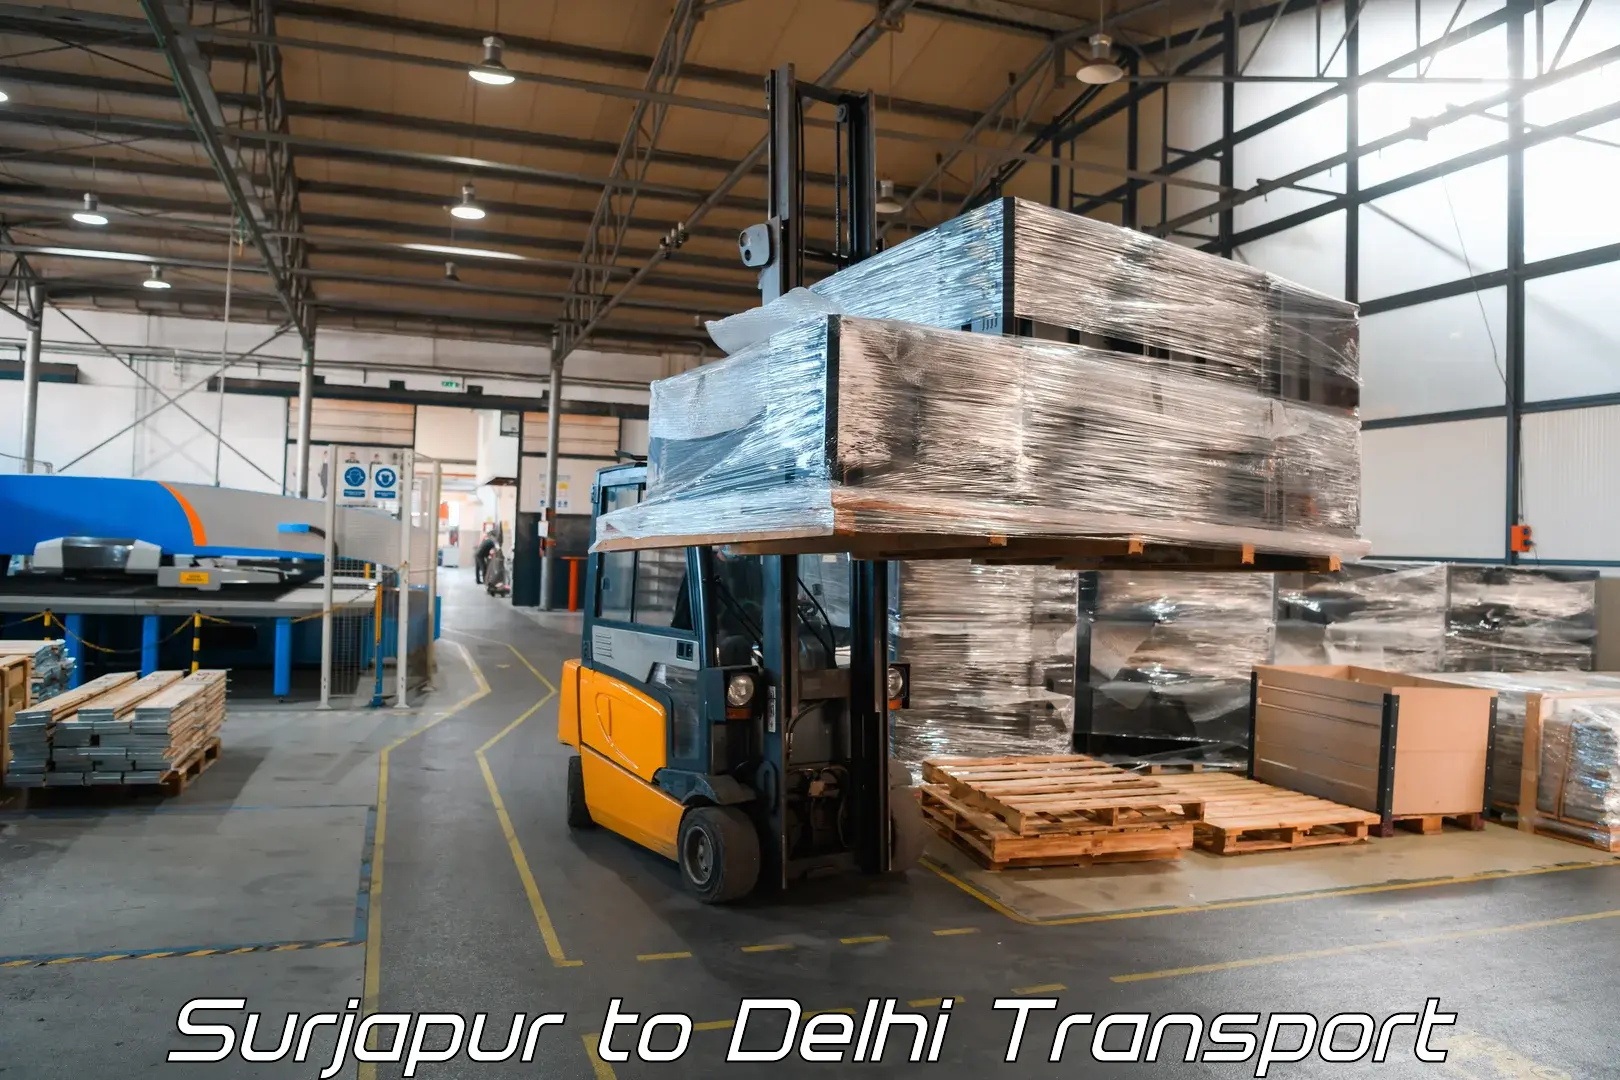 Air cargo transport services Surjapur to IIT Delhi